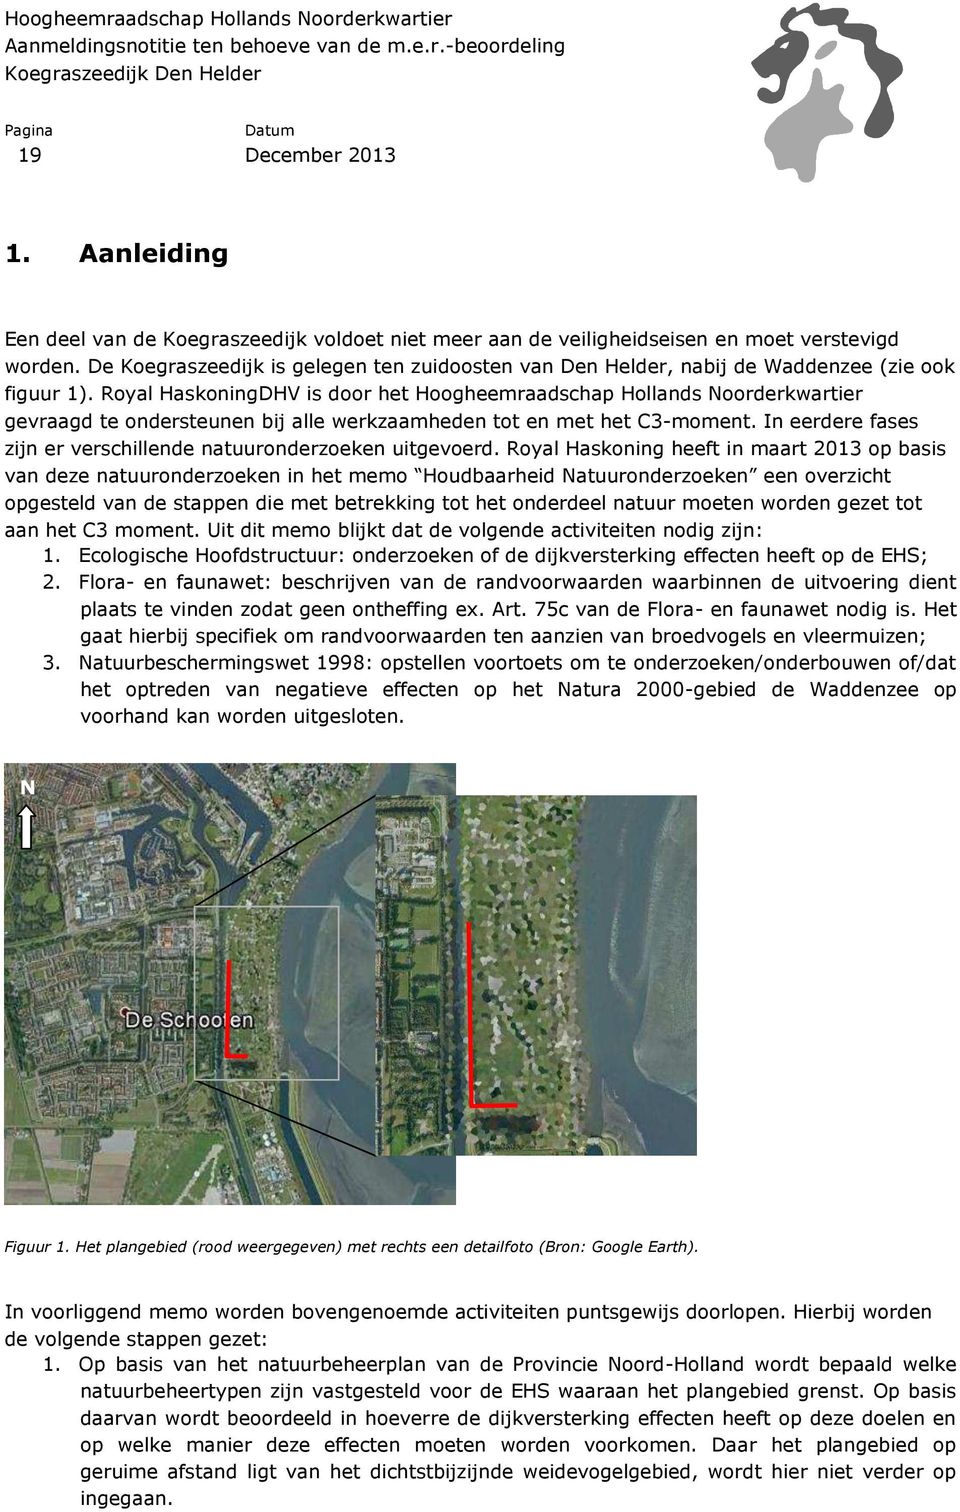 Royal HaskoningDHV is door het Hoogheemraadschap Hollands Noorderkwartier gevraagd te ondersteunen bij alle werkzaamheden tot en met het C3-moment.